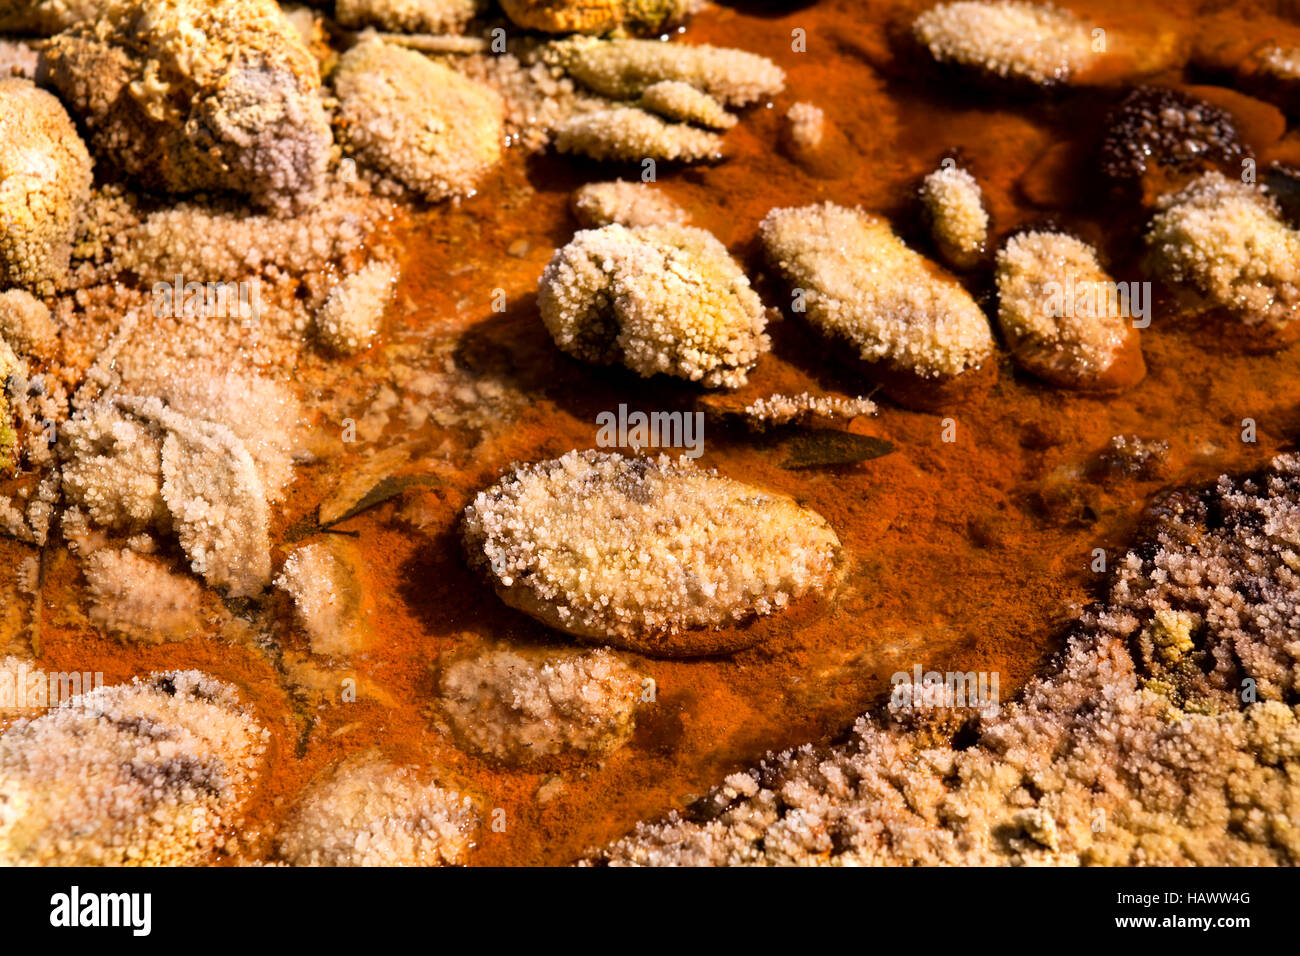 stones in acidic rio Tinto Stock Photo